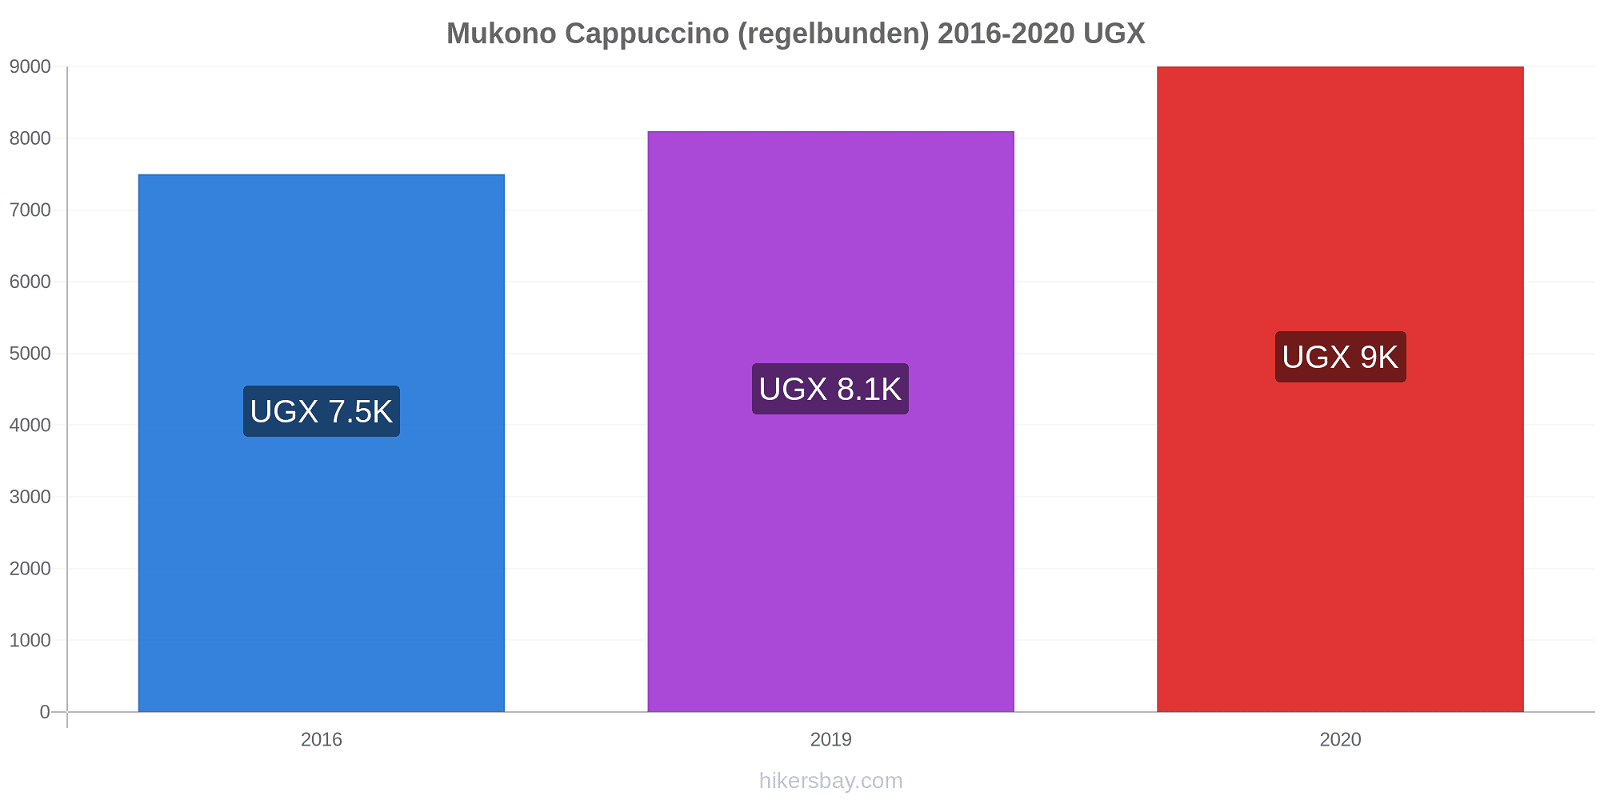 Mukono prisförändringar Cappuccino (regelbunden) hikersbay.com